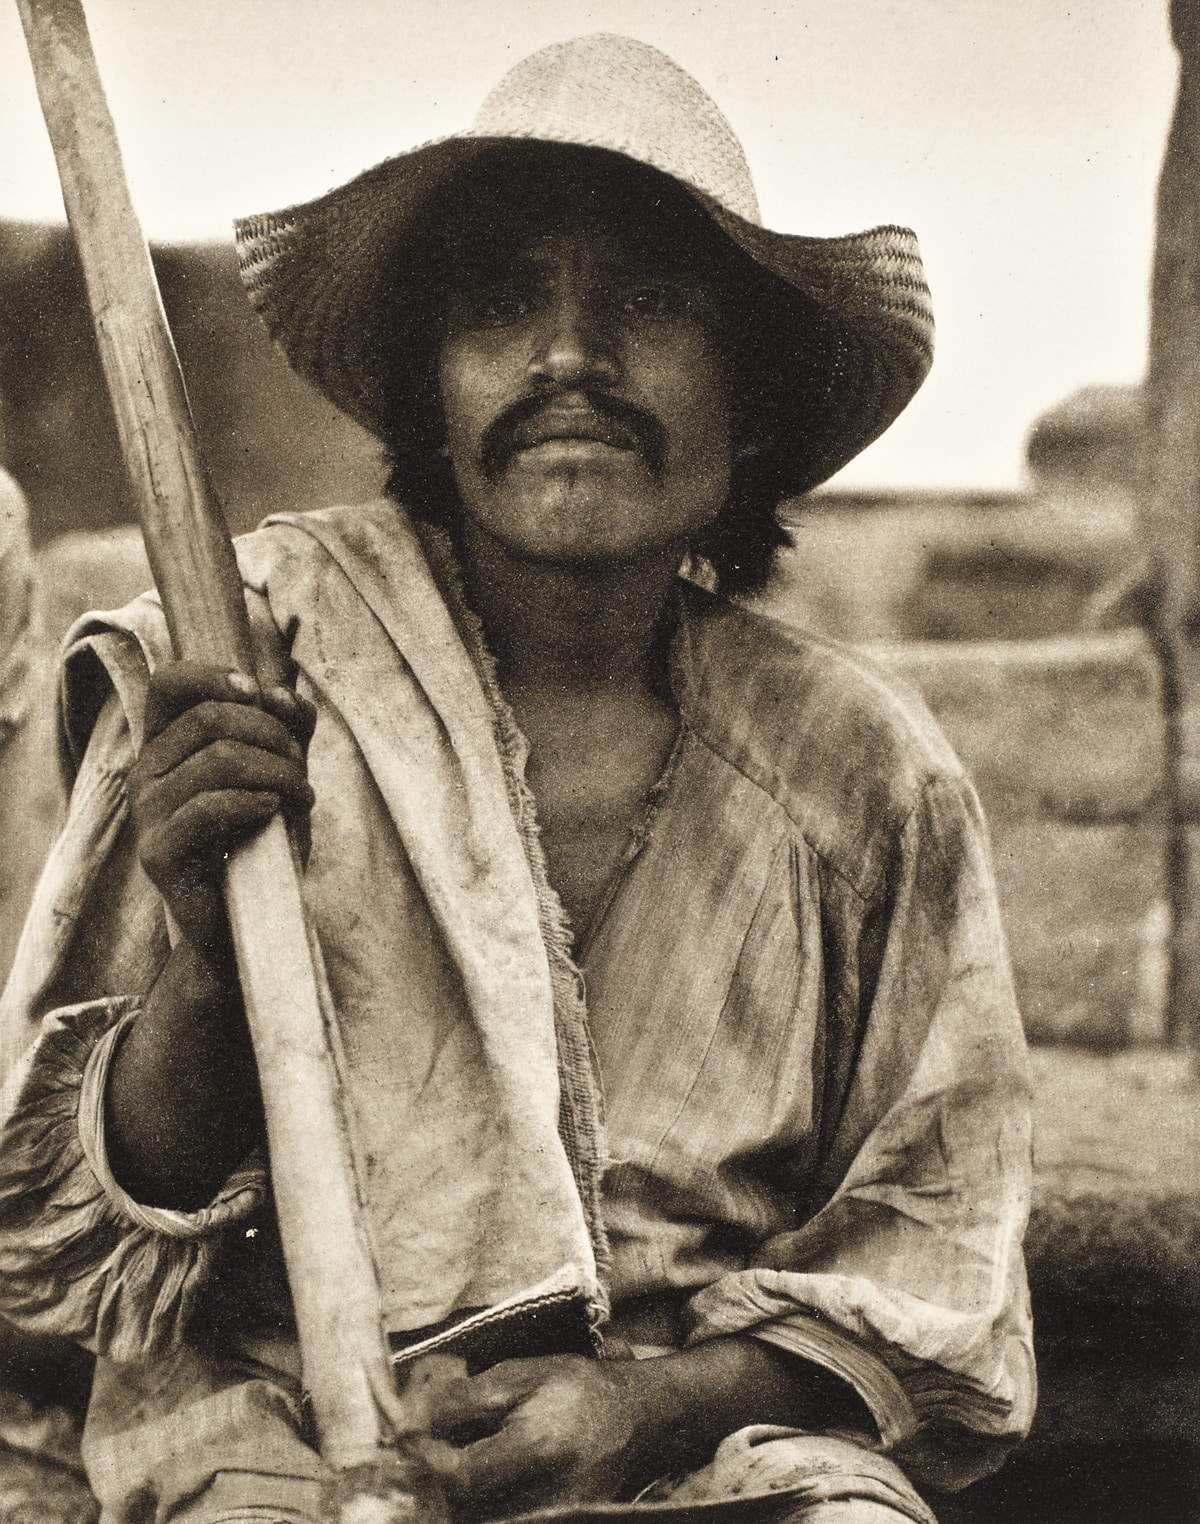 Man with a Hoe, Los Remedios, Mexico